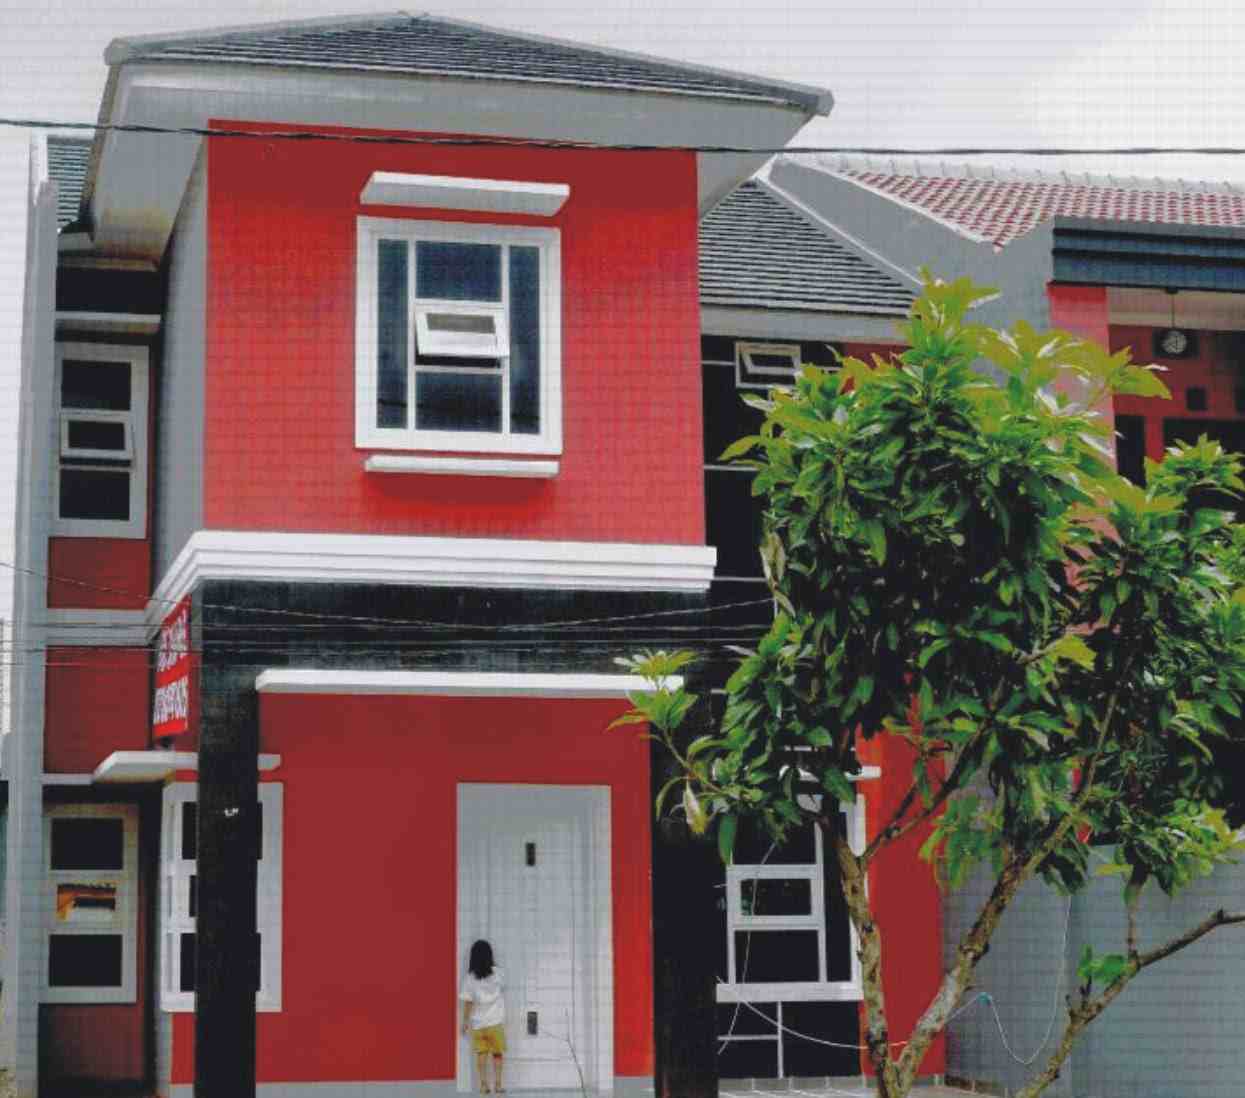 67 Design Cat Rumah Minimalis Warna Merah Desain Rumah Minimalis